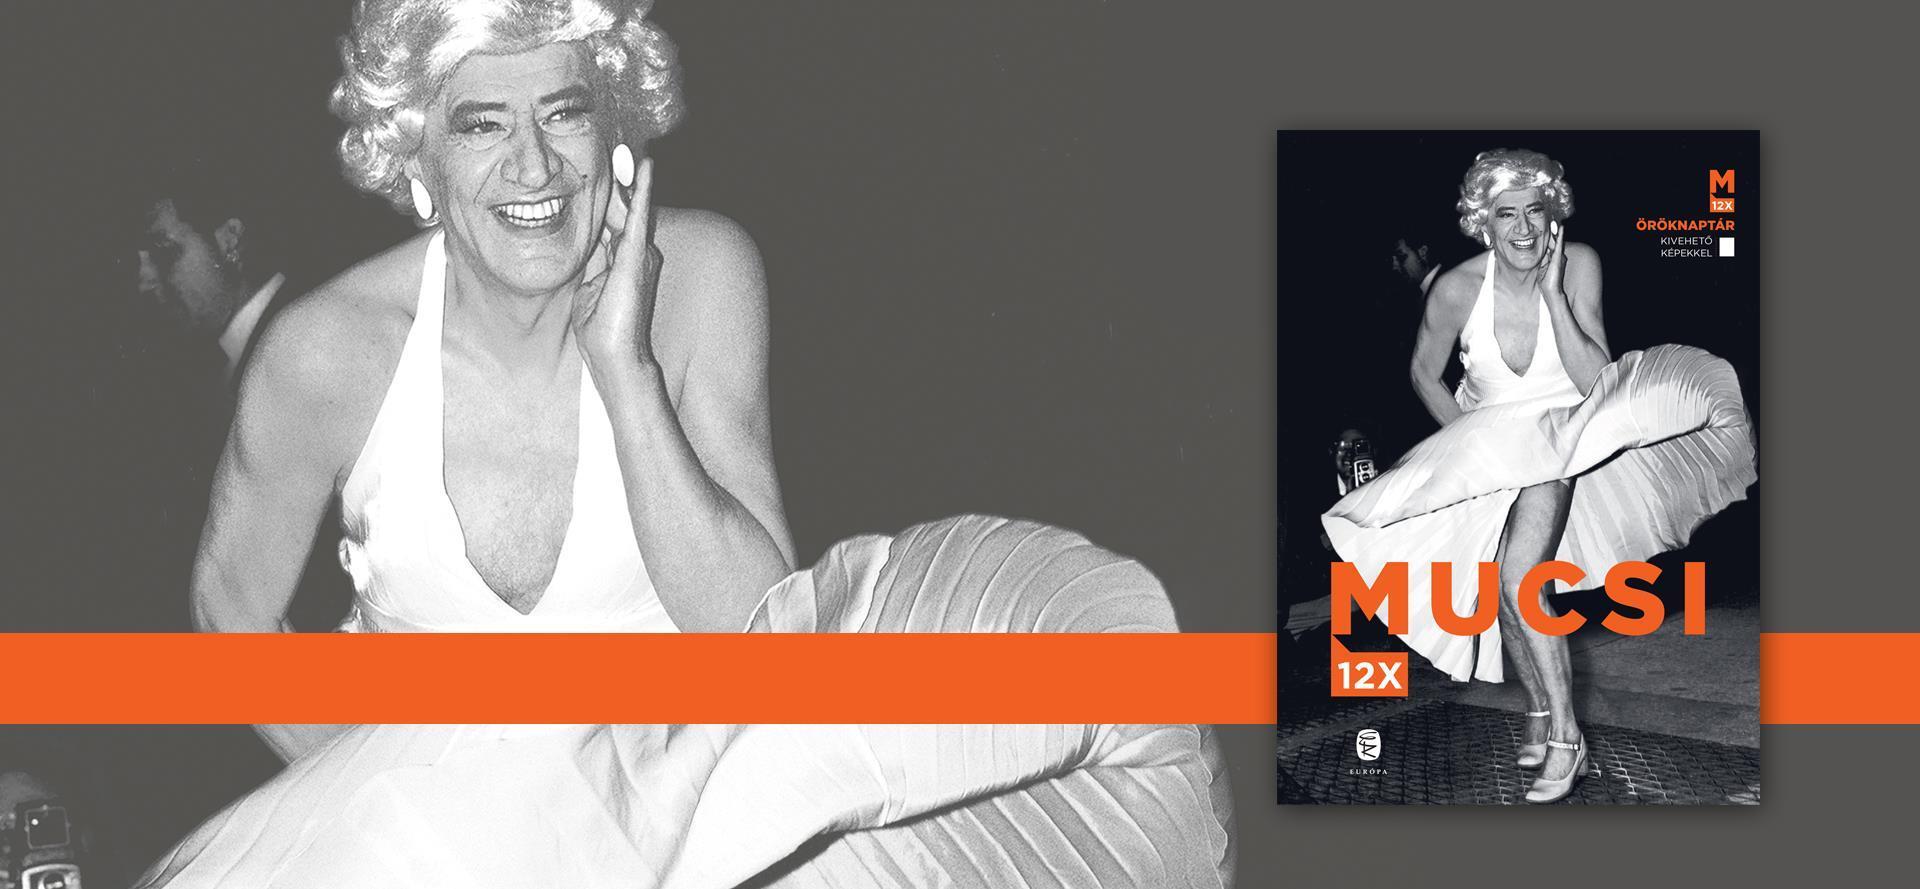 Mucsi Zoltán Marilyn Monroeként pózol az Európa Könyvkiadó öröknaptárának borítóján